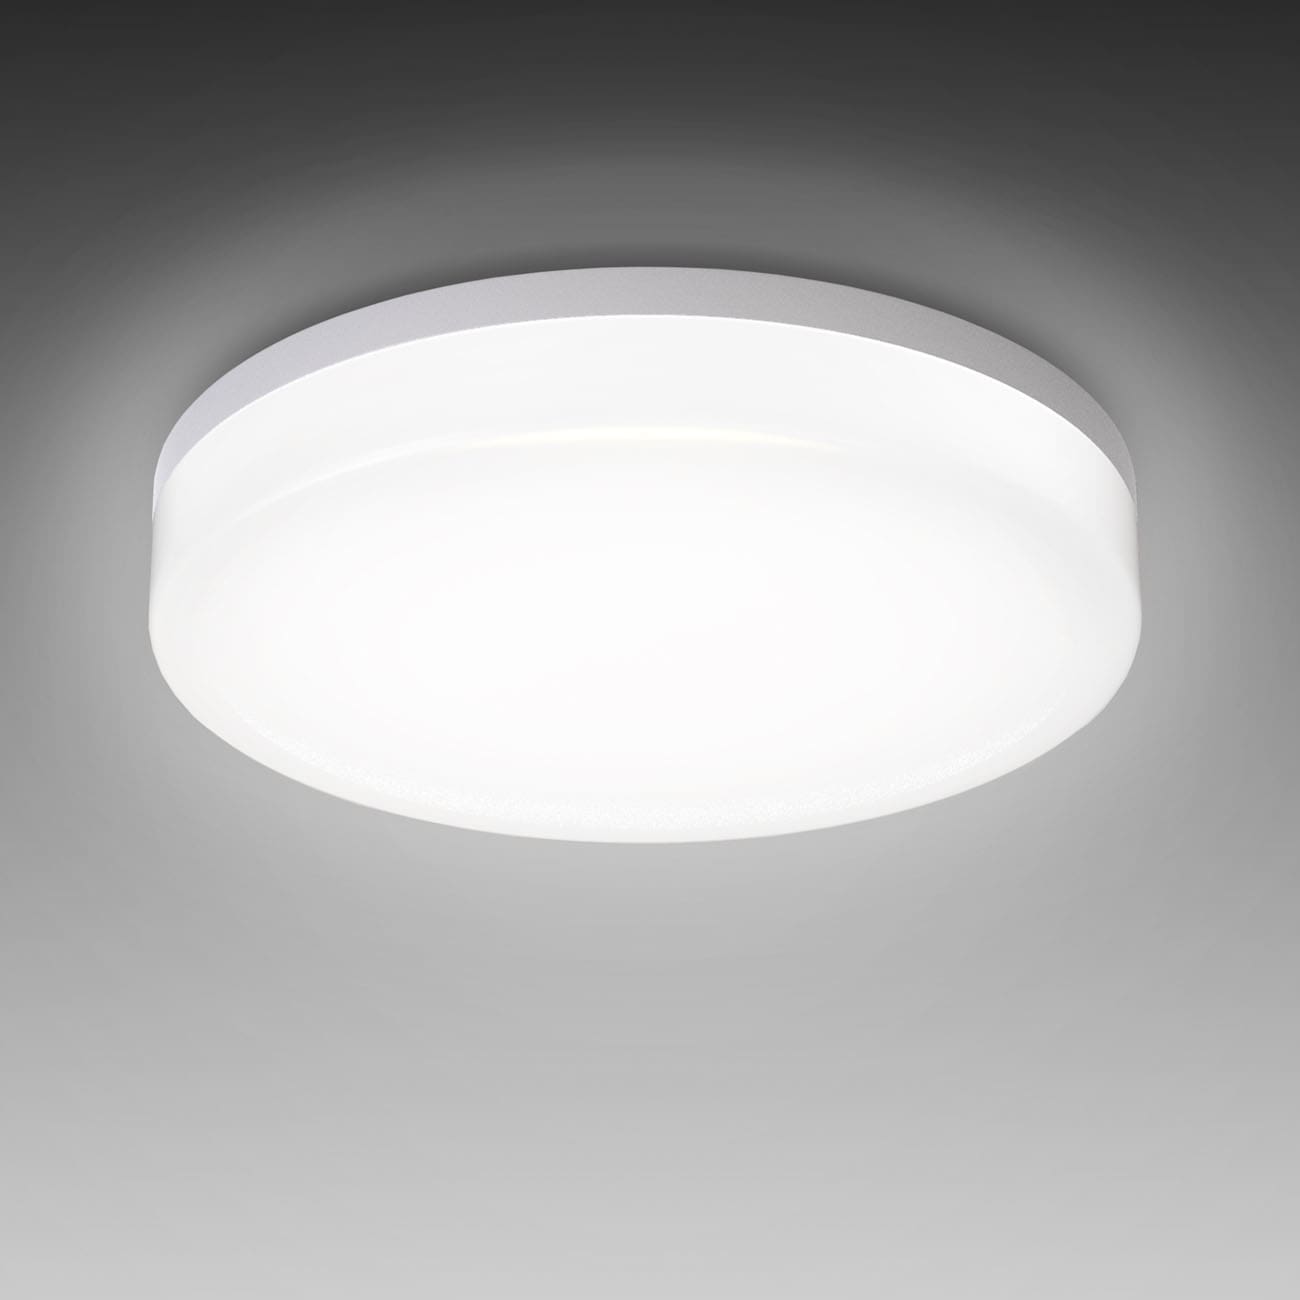 LED Deckenleuchte Badlampe IP54 S - 3